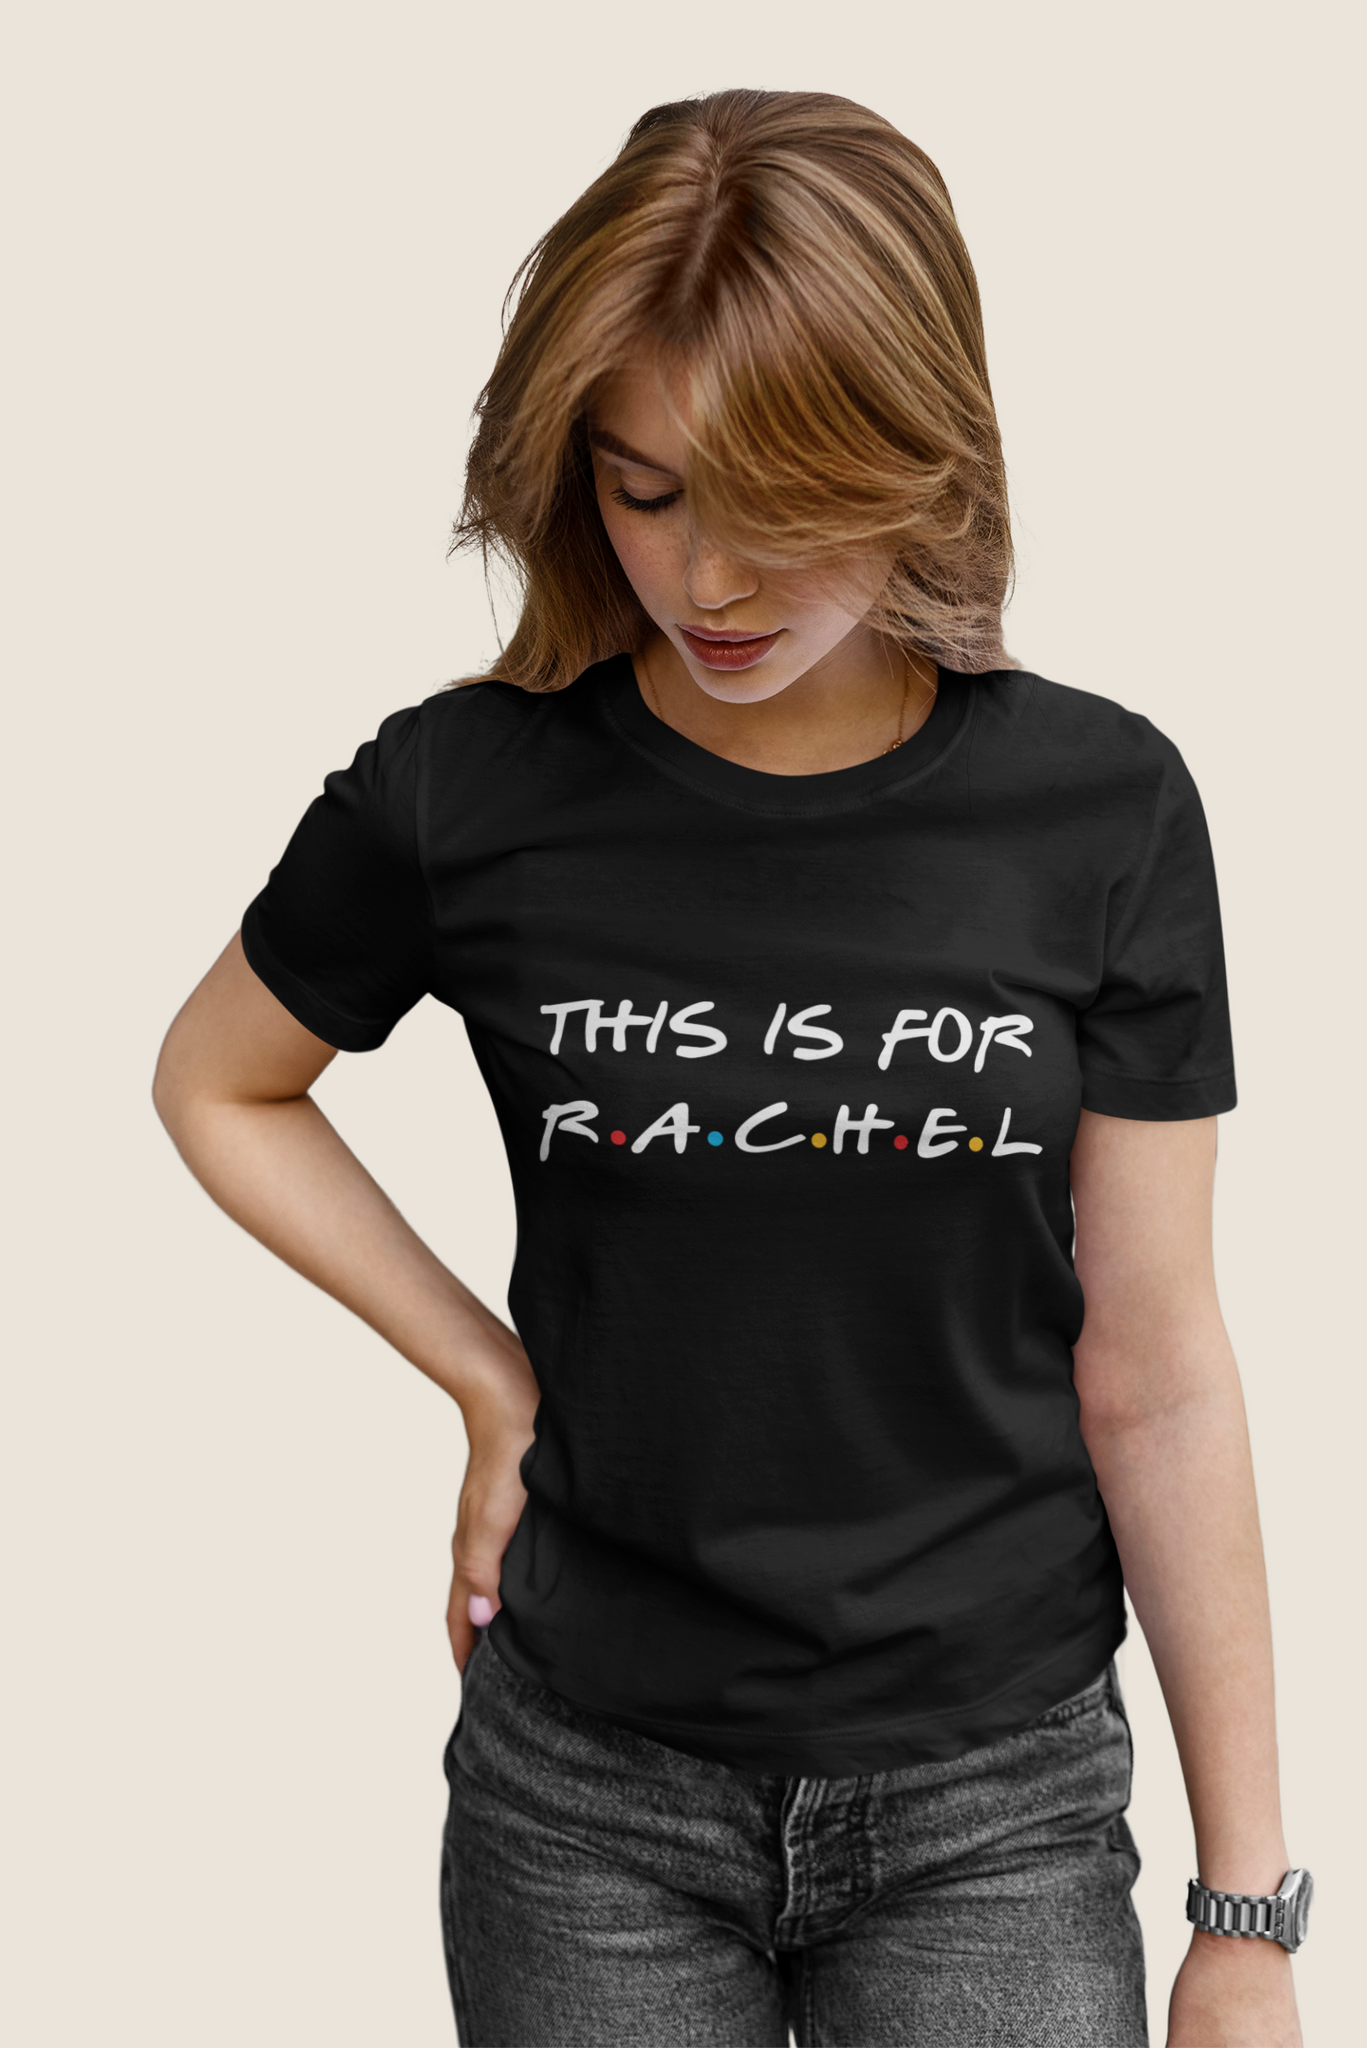 Friends TV Show T Shirt, Friends Shirt, Rachel T Shirt, This Is For Rachel Tshirt